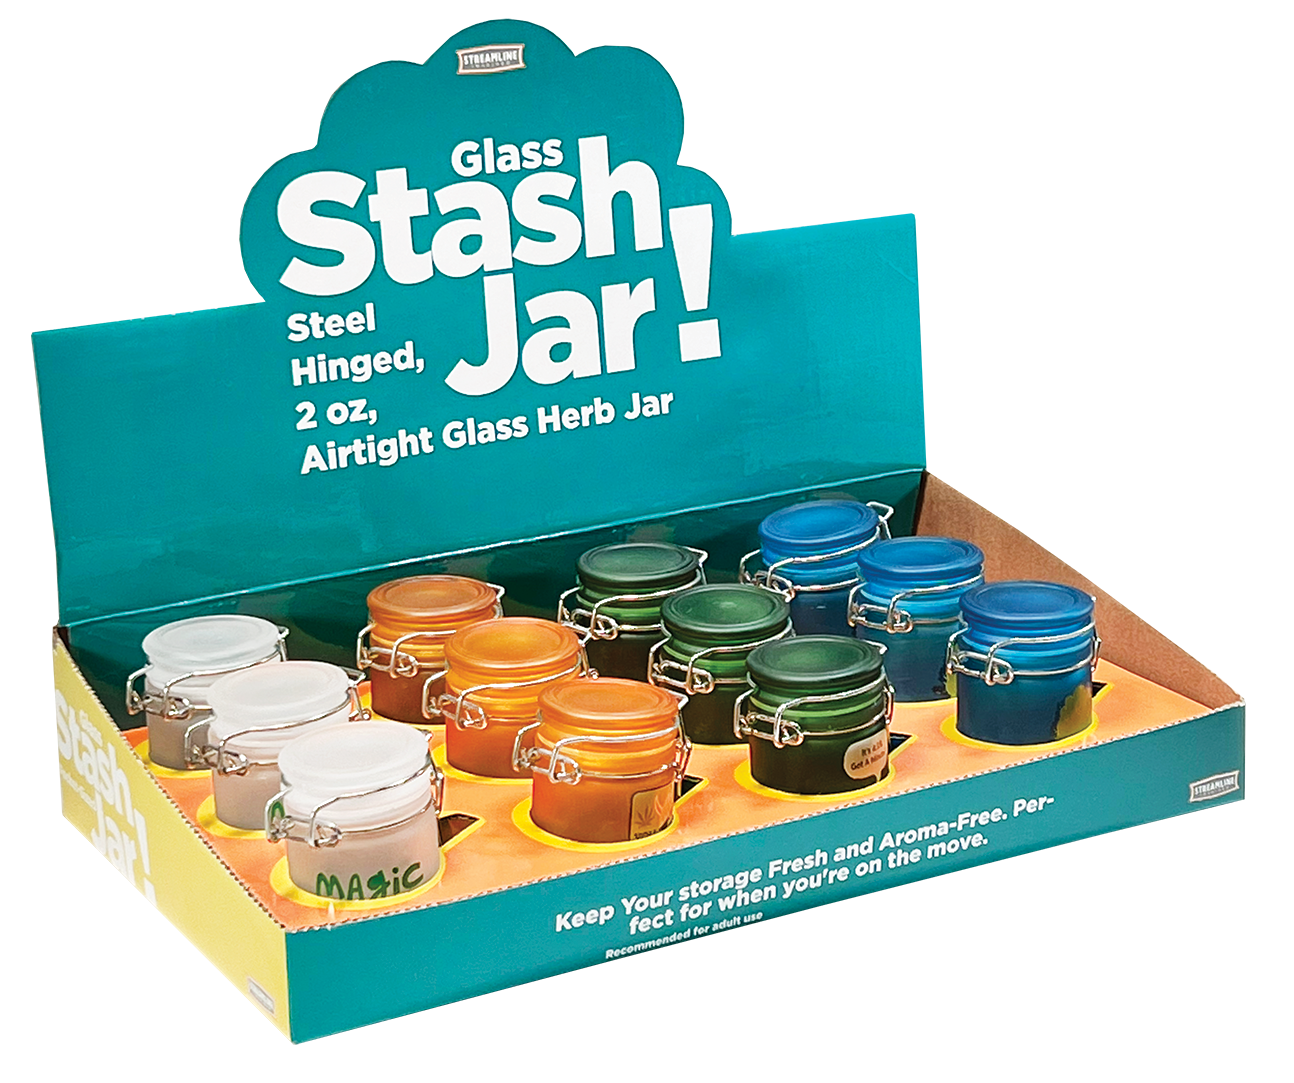 Pocket-size Stash & Seal Jar